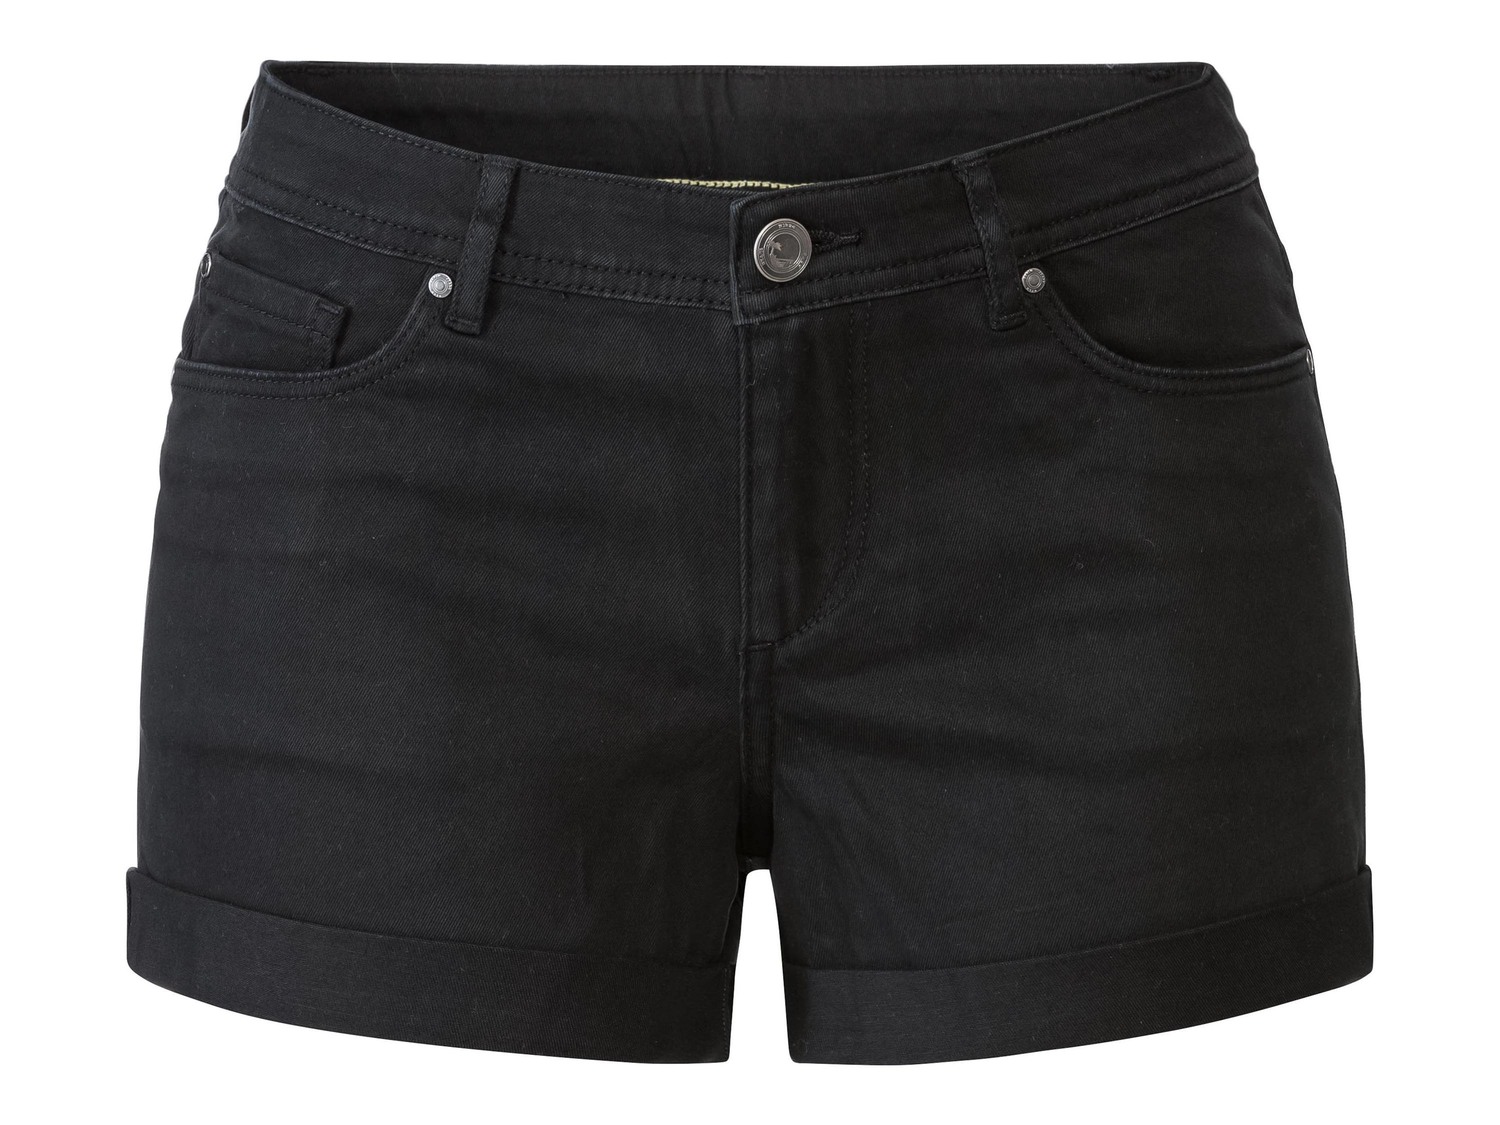 Shorts in jeans da donna Esmara, prezzo 6.99 &#8364;  
Misure: 38-46